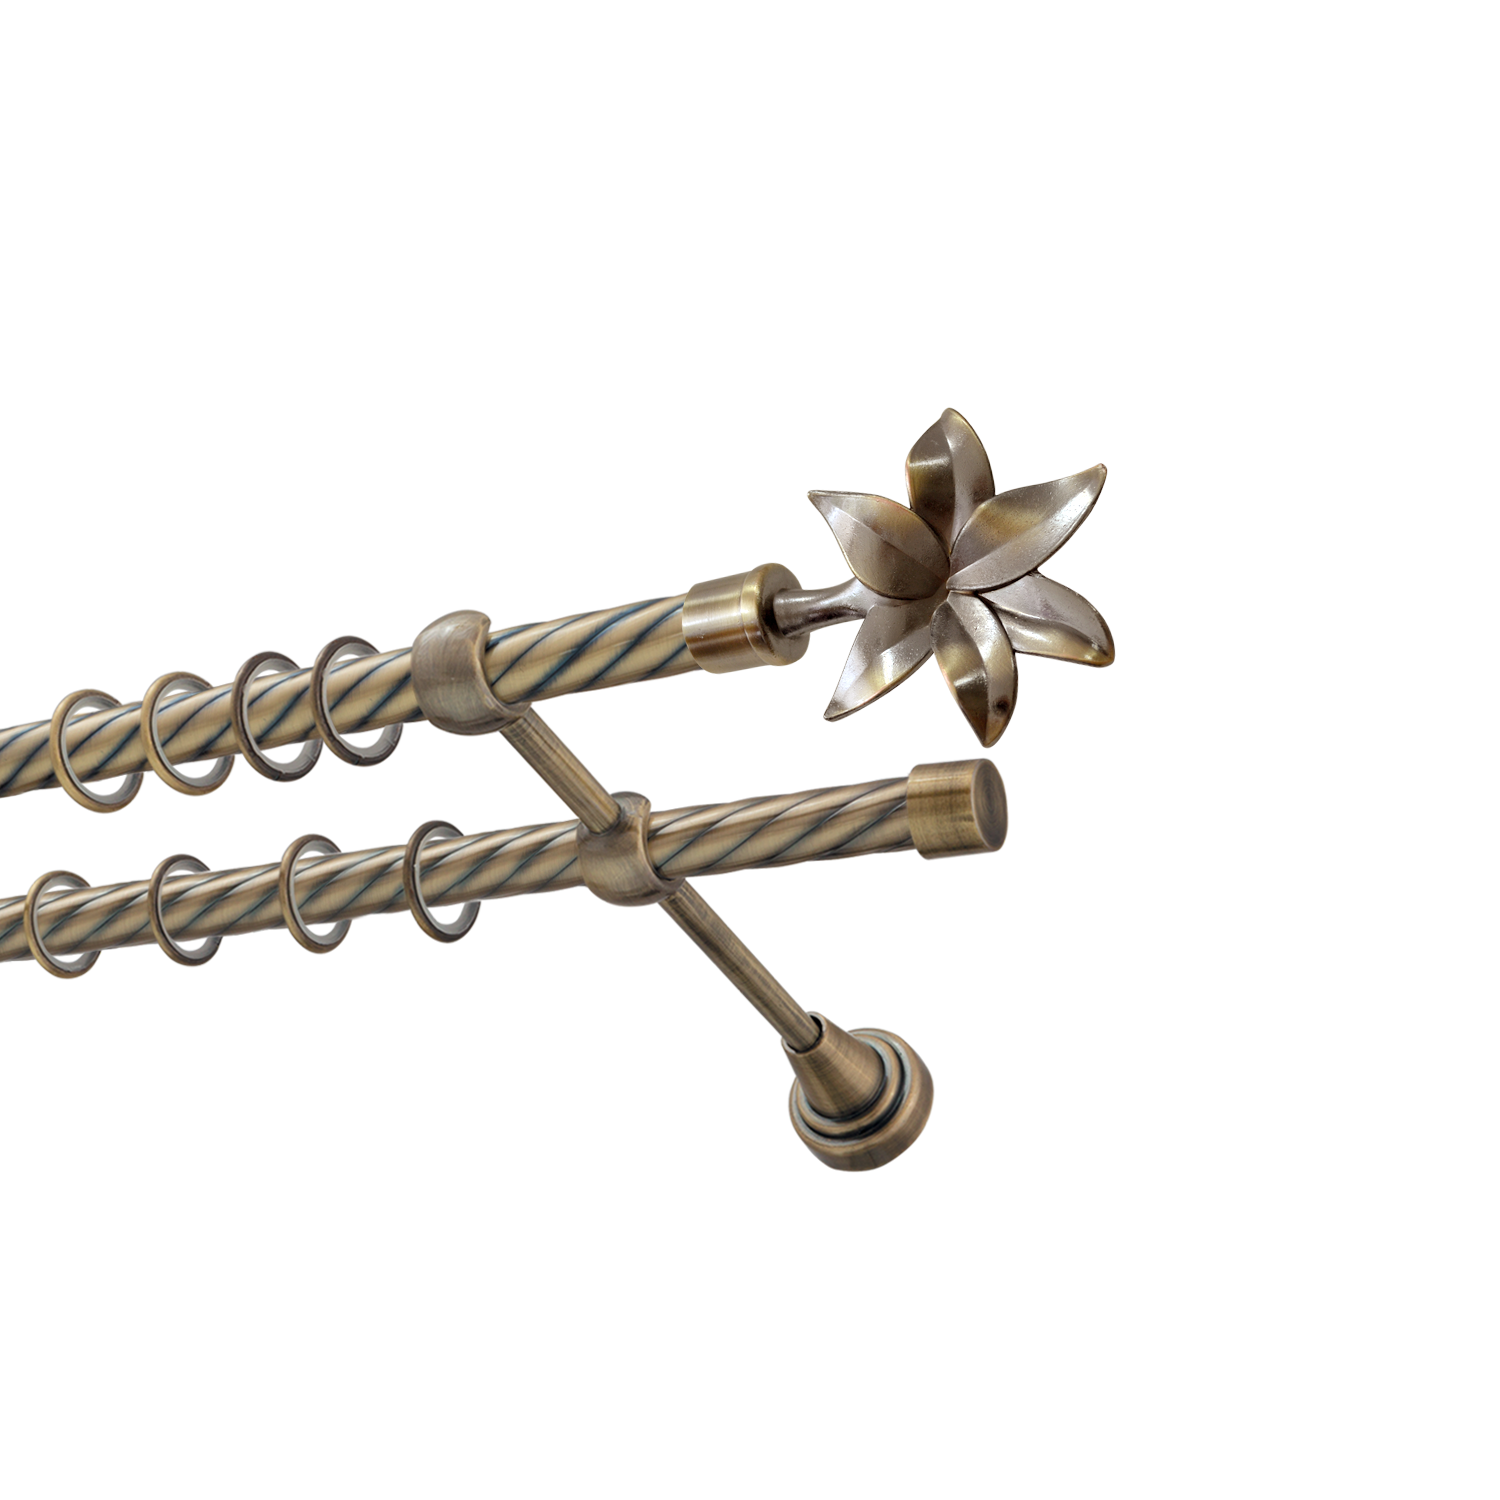 Металлический карниз для штор Магнолия, двухрядный 16/16 мм, бронза, витая штанга, длина 240 см - фото Wikidecor.ru